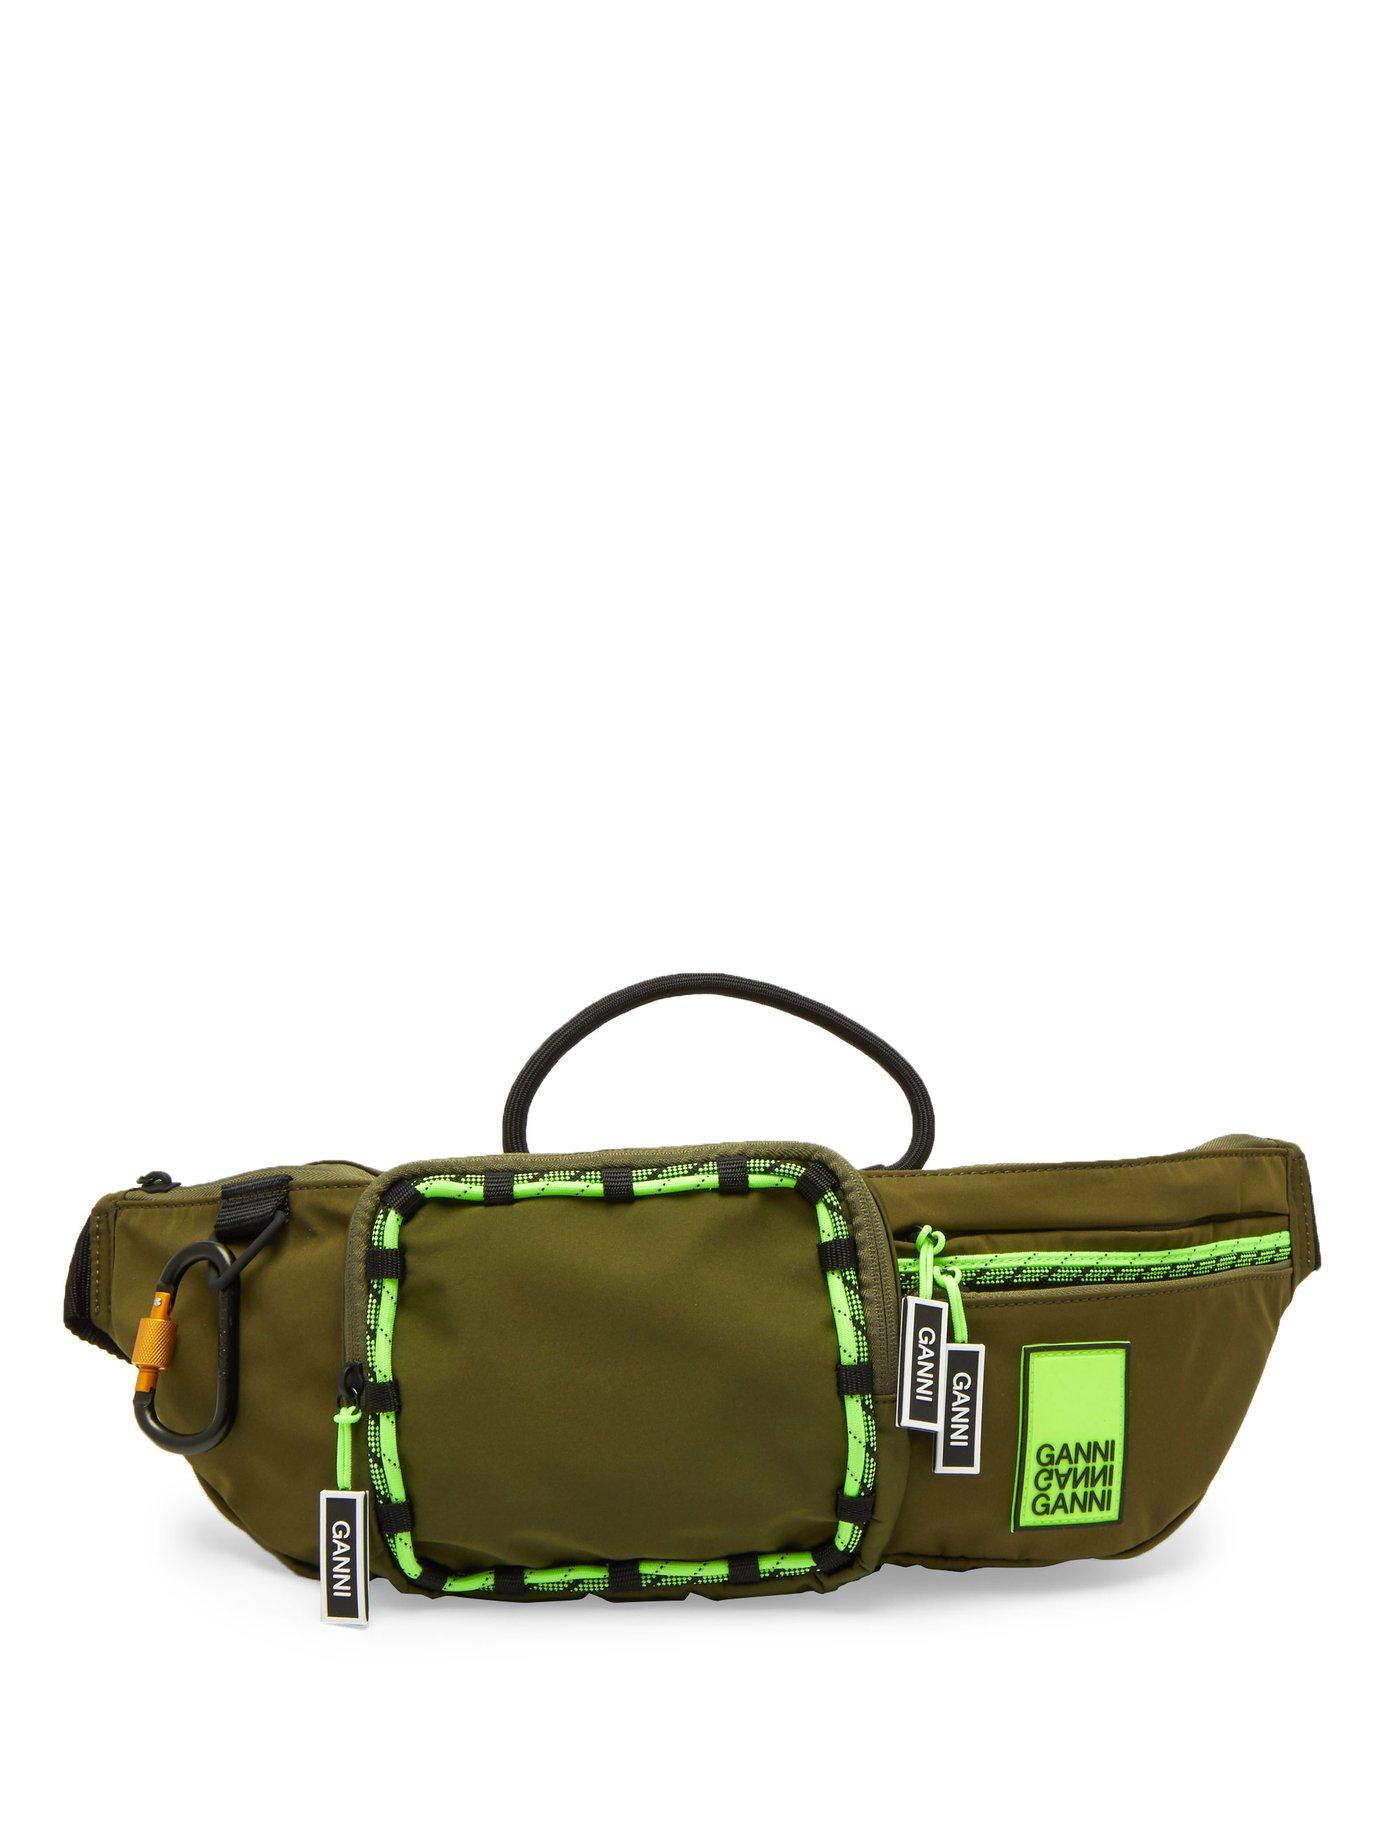 Ganni Rubber Azalea Neon Trim Belt Bag in Khaki (Green) - Lyst